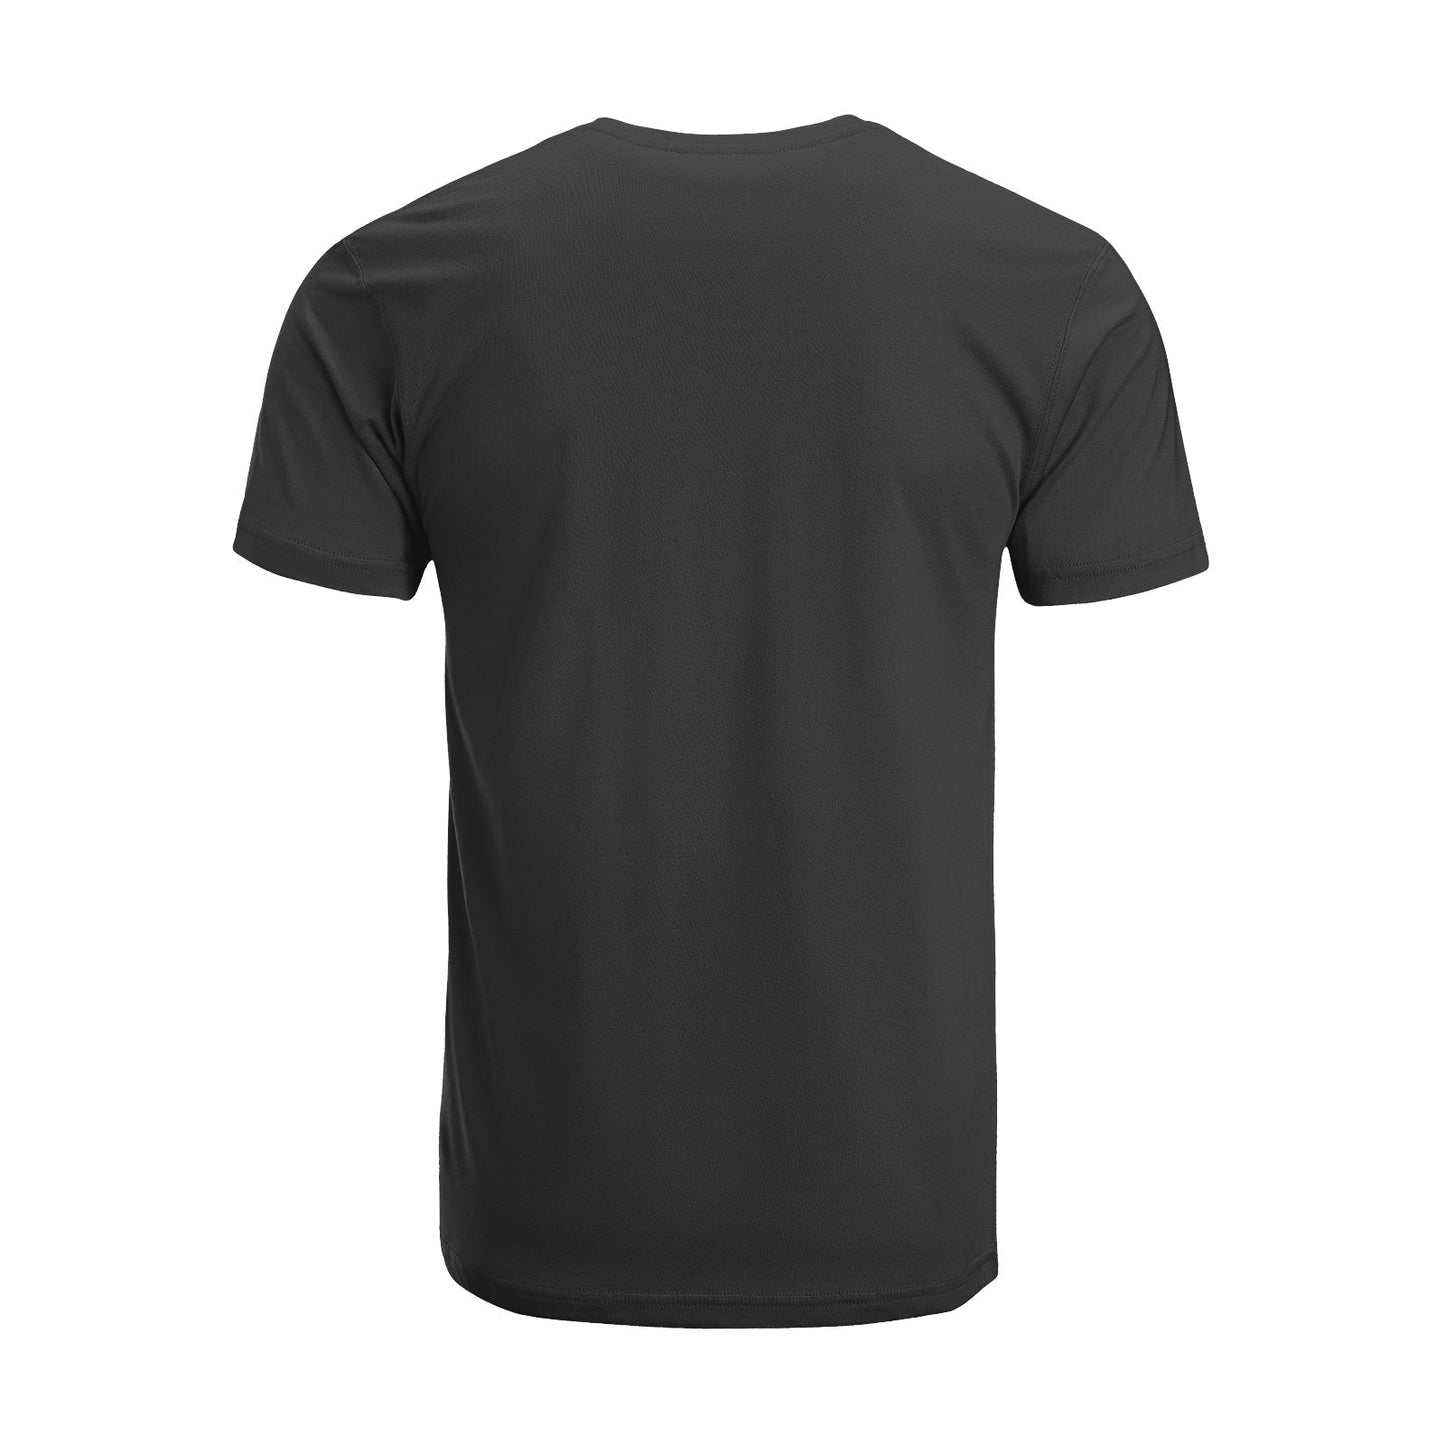 Unisex Short Sleeve Crew Neck Cotton Jersey T-Shirt TRUCK 08